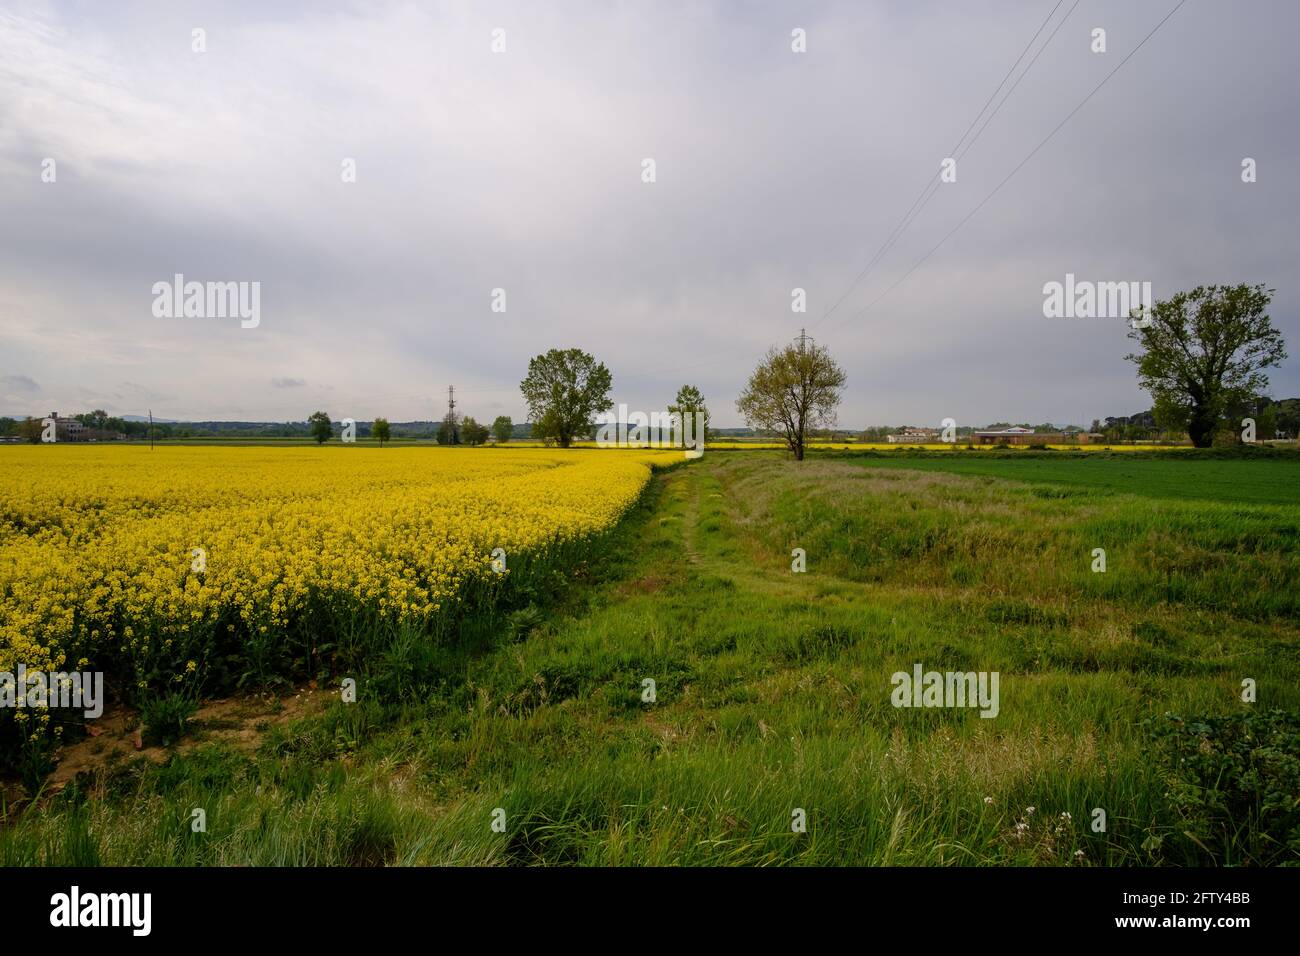 Champ de colza jaune en fleur sur un paysage agricole sous un ciel nuageux Banque D'Images